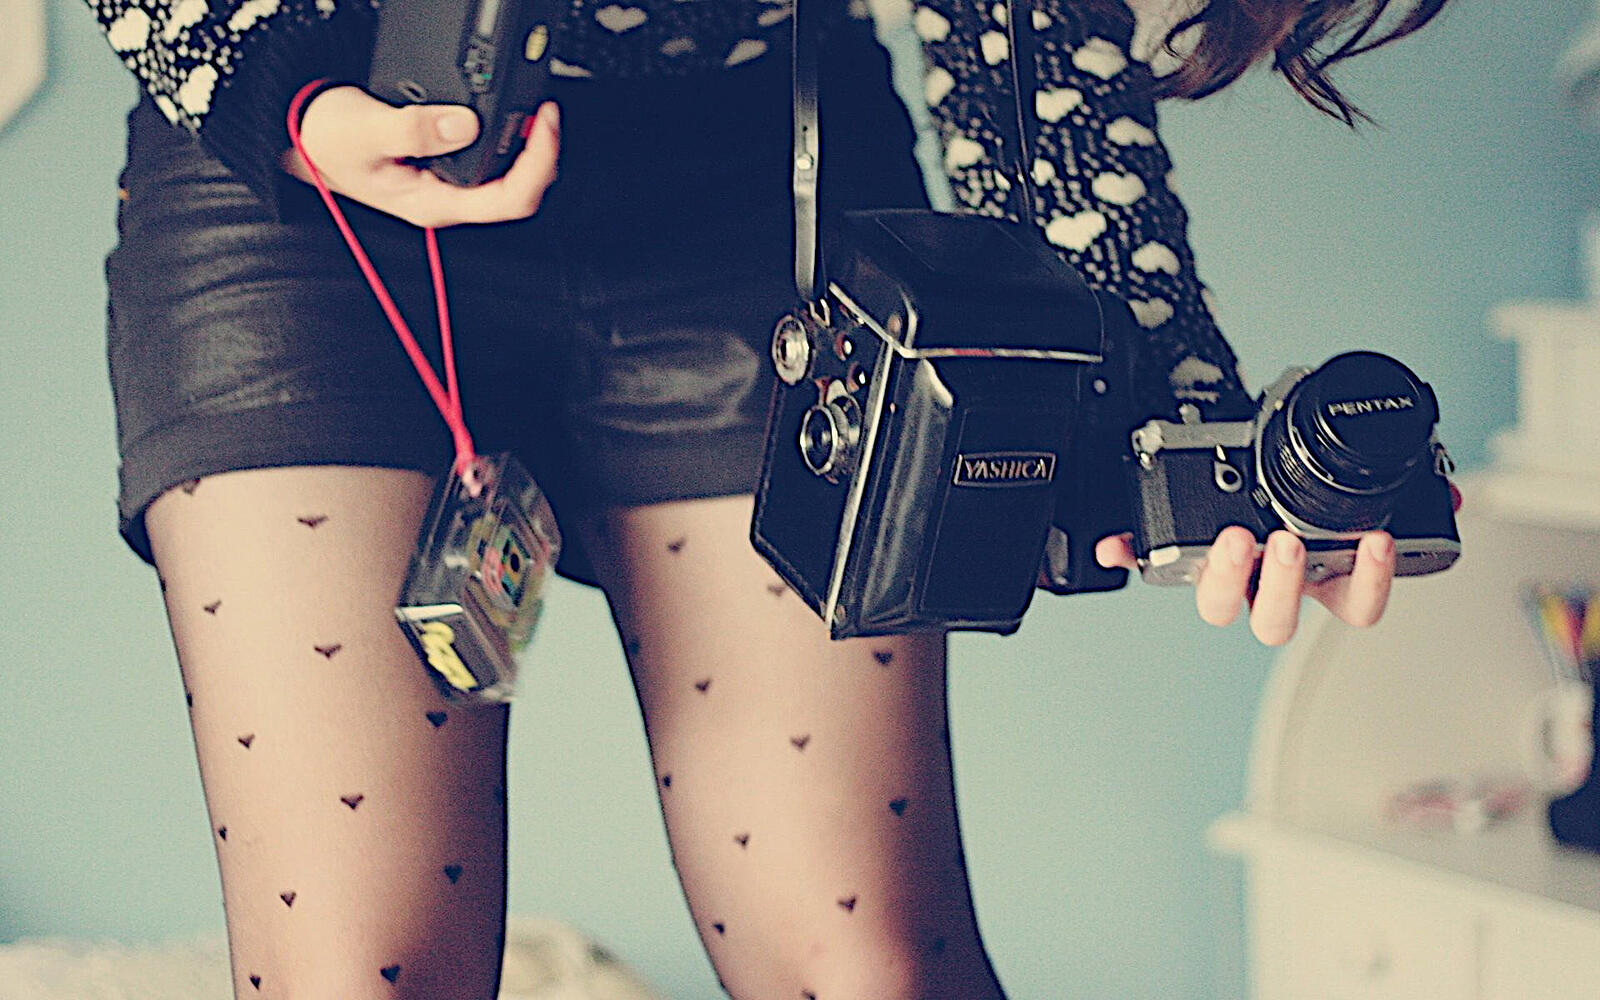 桌面上的壁纸照相机 腿 短裙